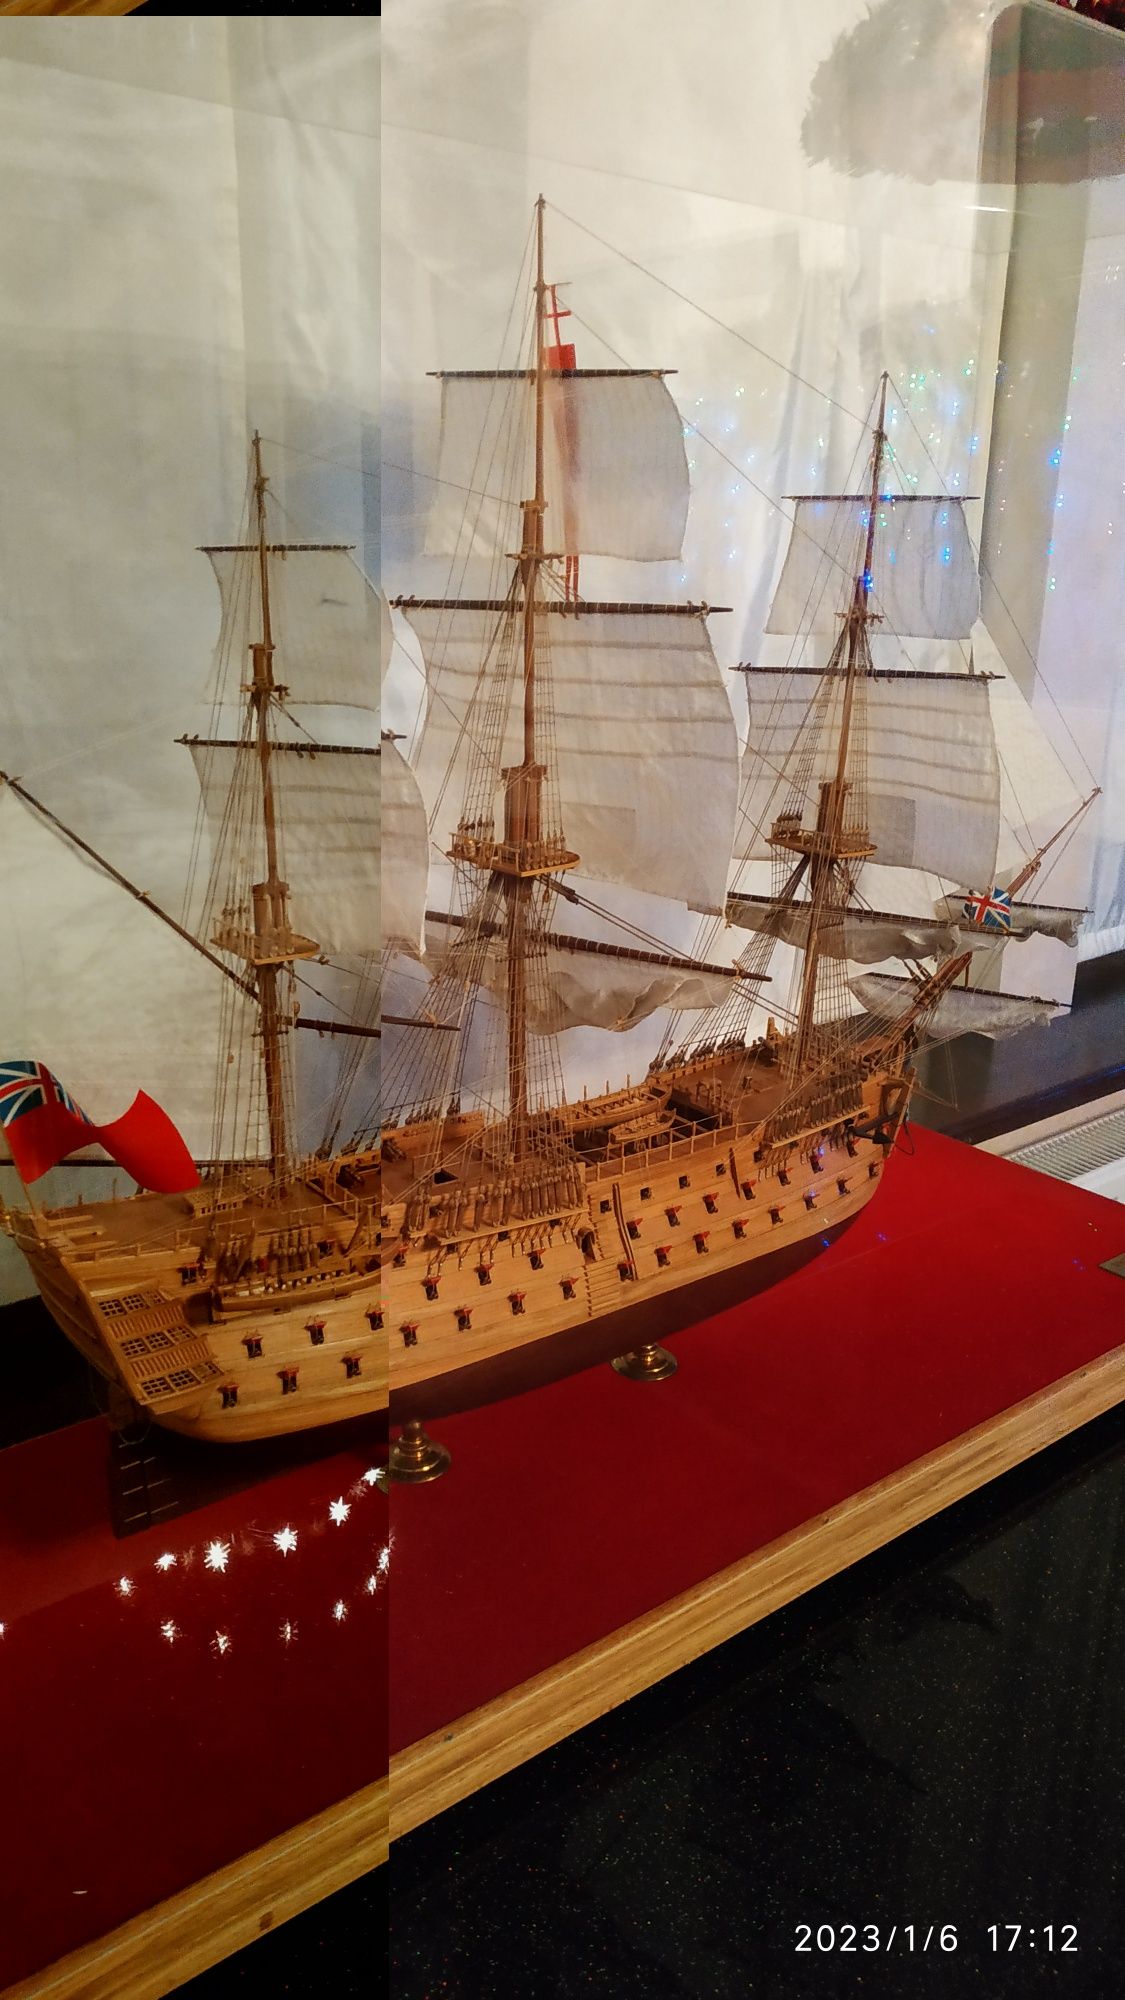 Модель флагманского корабля адмирала Нельсона "Виктори" 1765 года